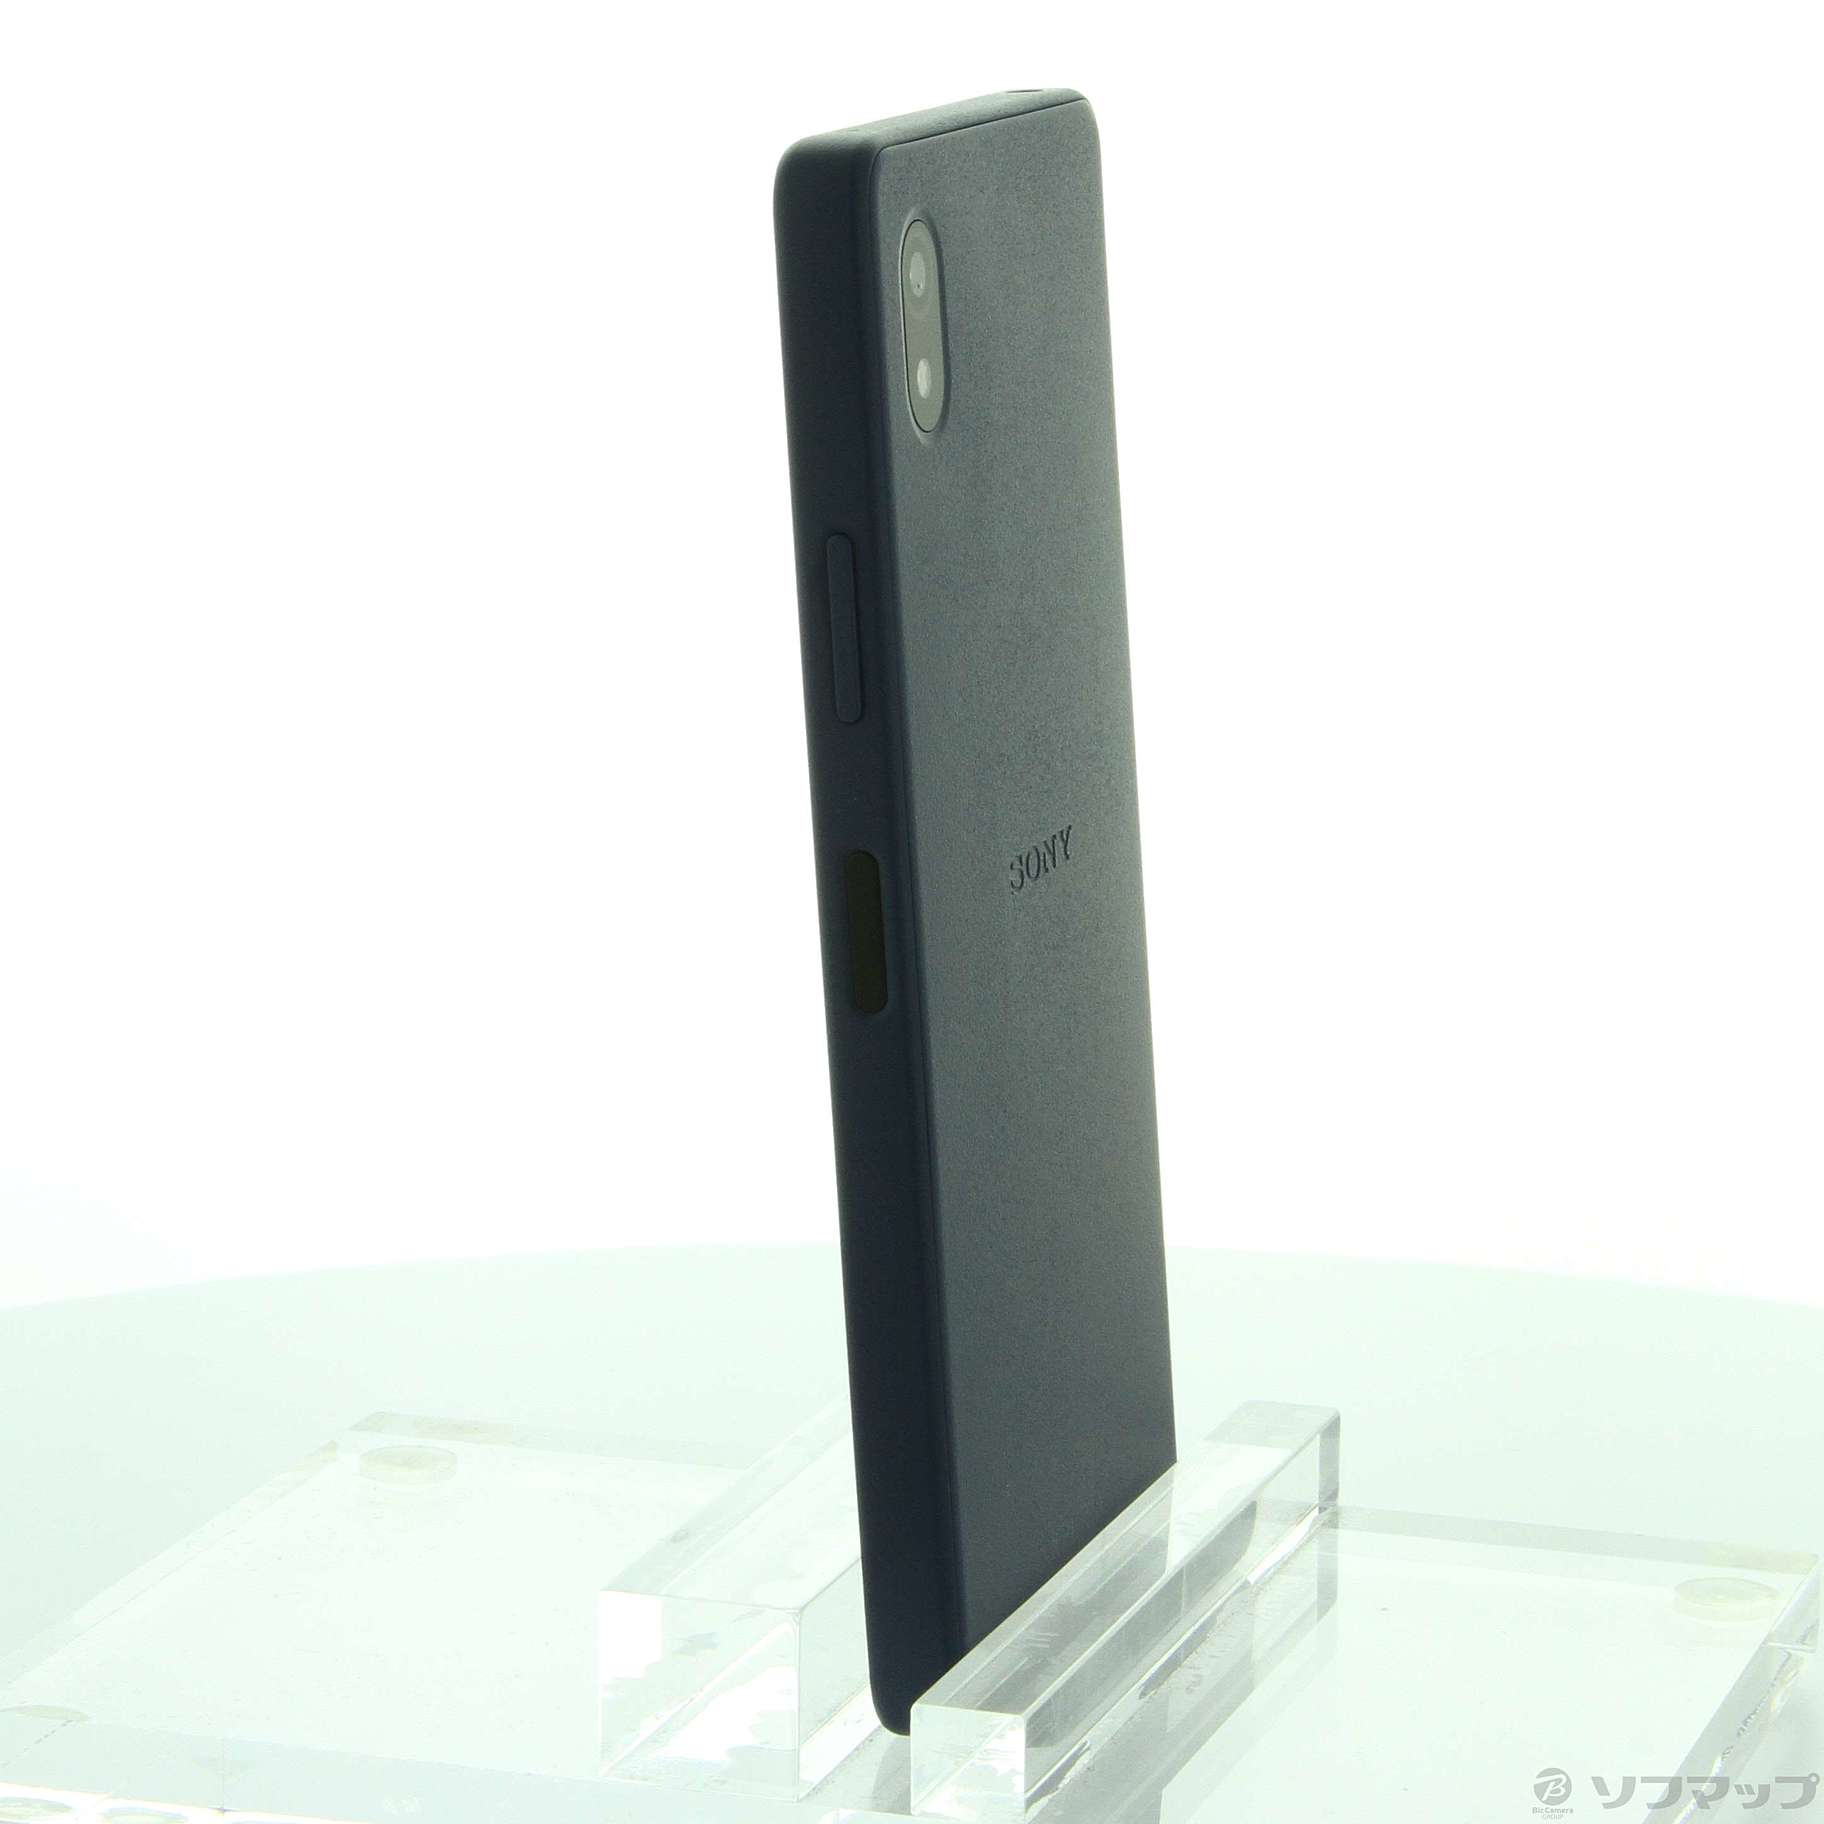 中古】Xperia Ace III 64GB ブルー SOG08 auロック解除SIMフリー